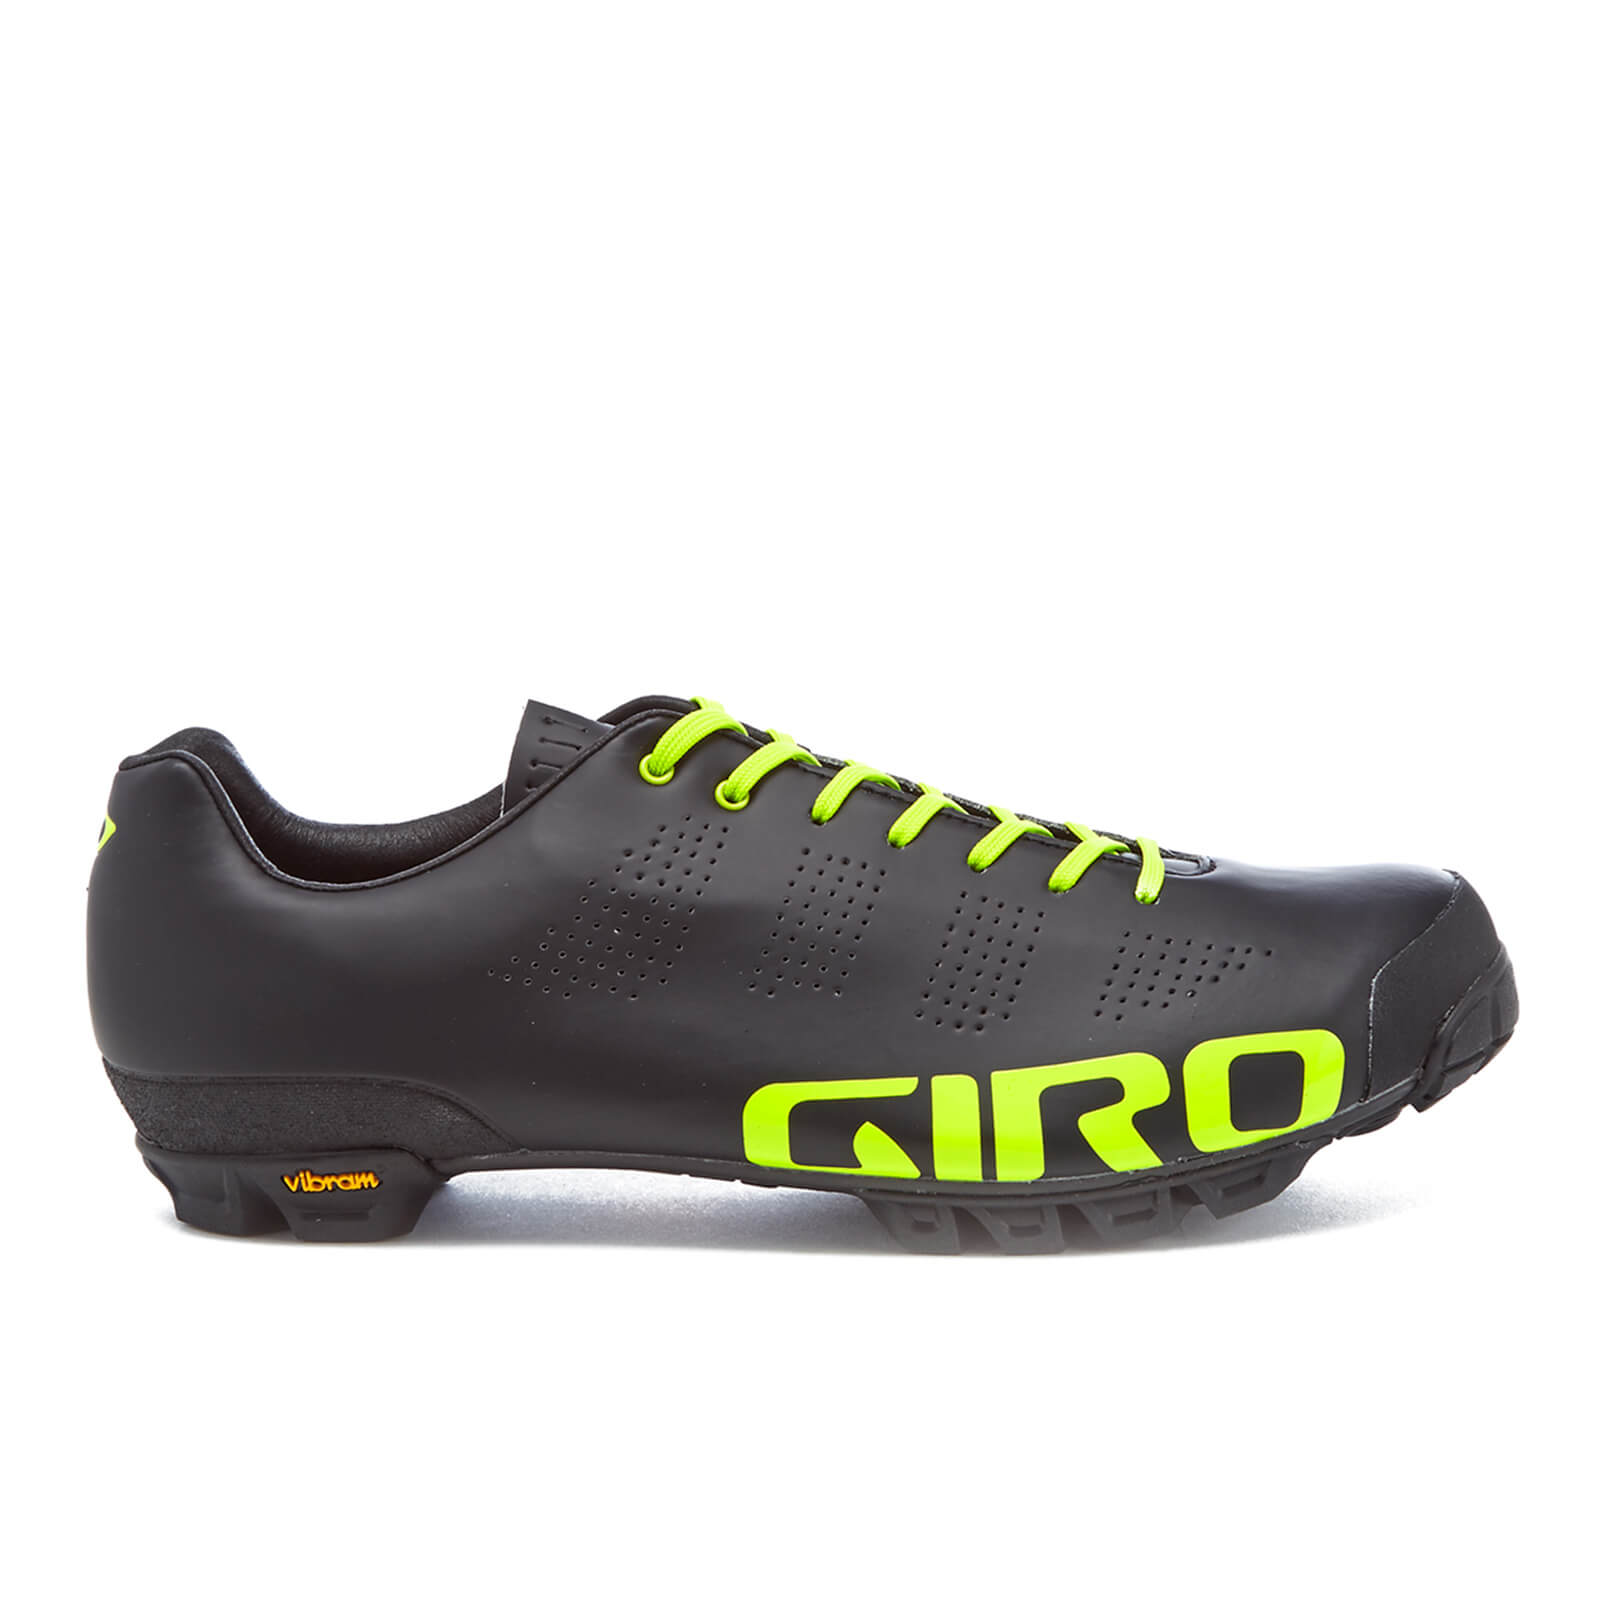 giro riding shoes